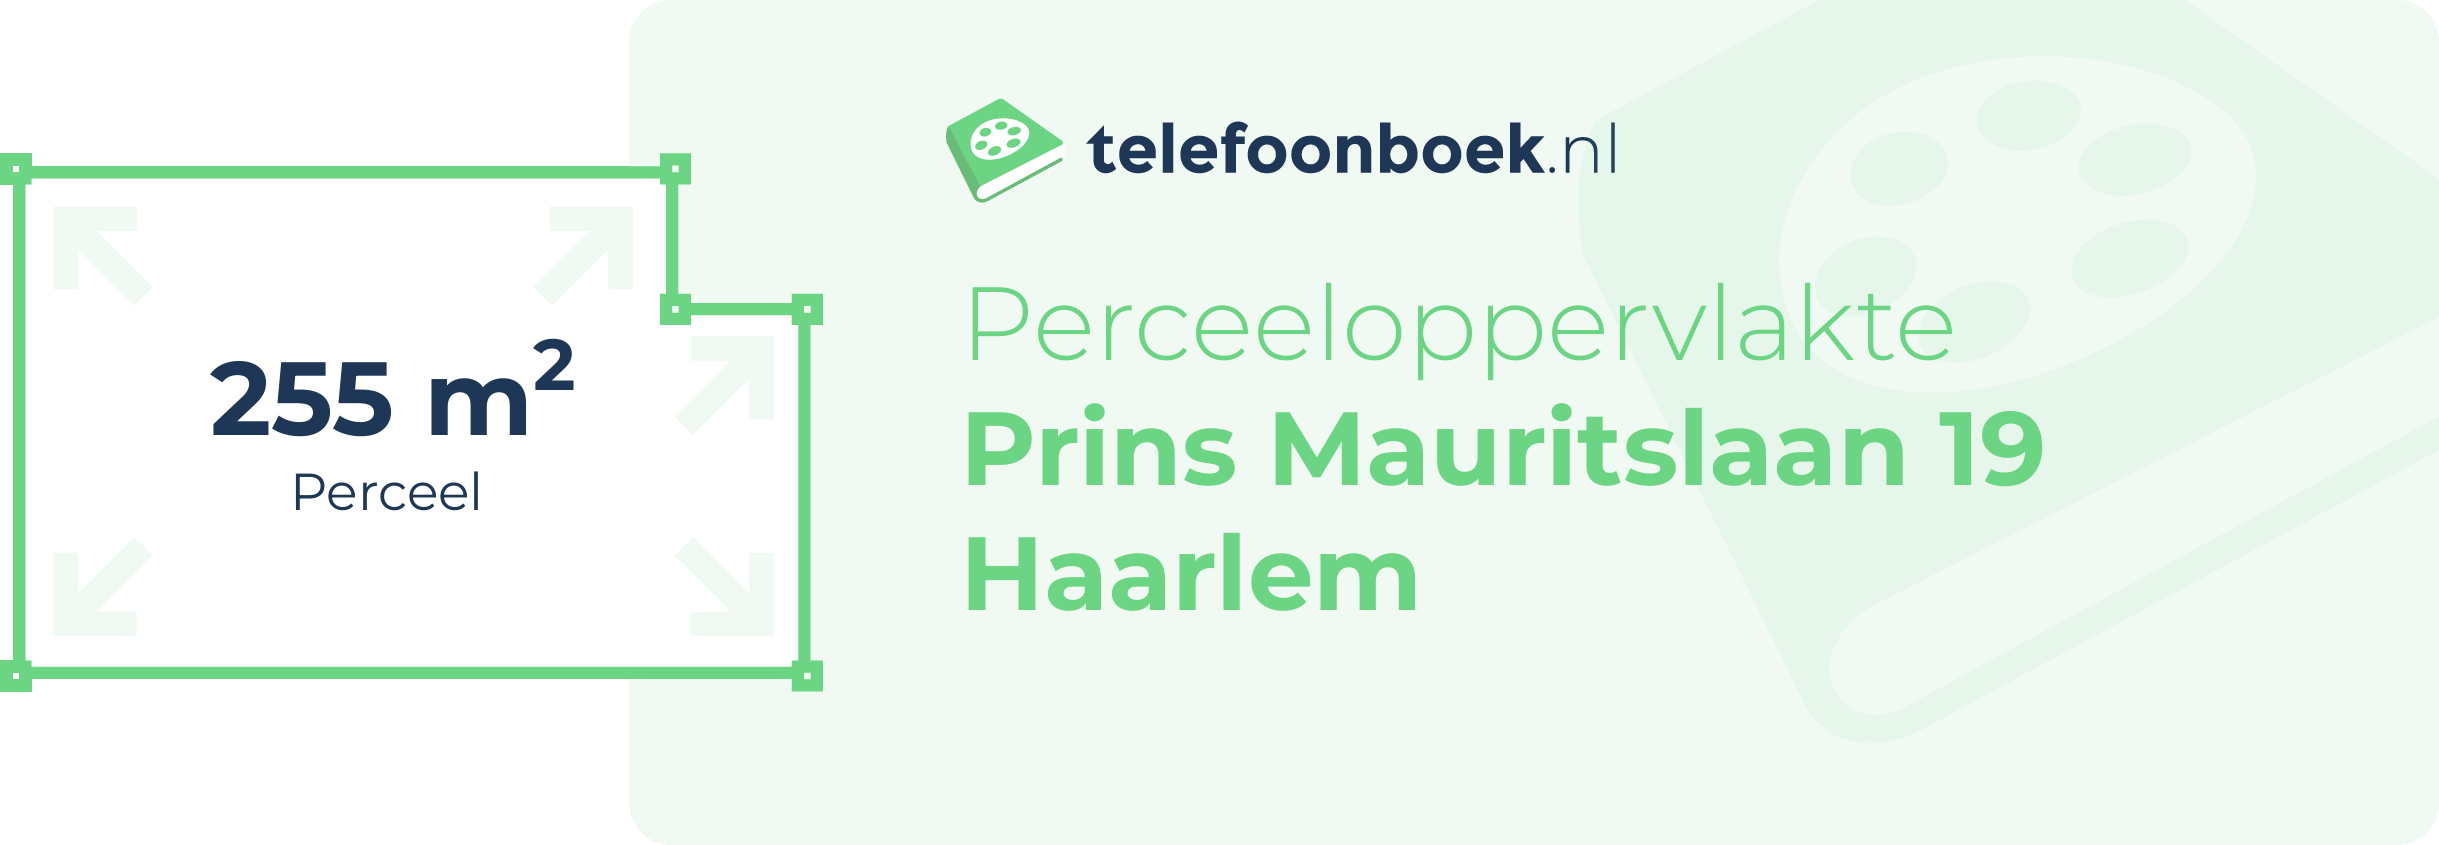 Perceeloppervlakte Prins Mauritslaan 19 Haarlem